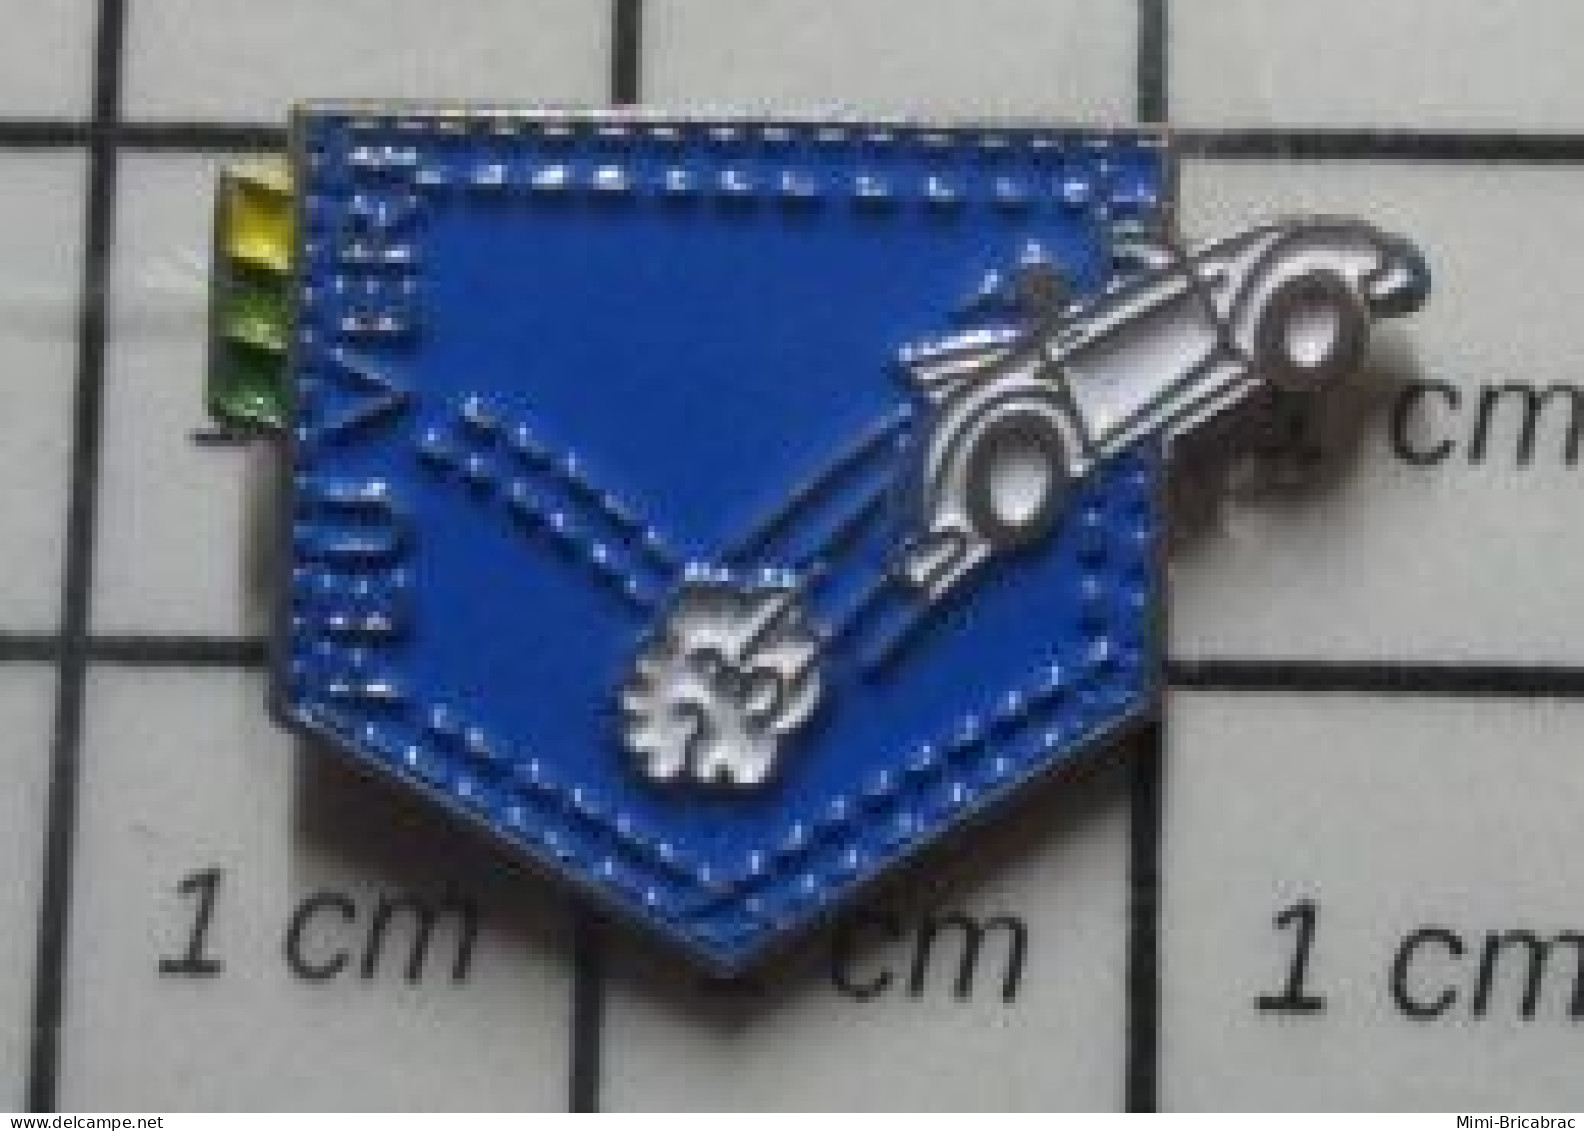 915A Pin's Pins / Beau Et Rare / AUTOMOBILES / VW COCCINELLE FEU VERT POCHE BLUE JEAN'S - Volkswagen